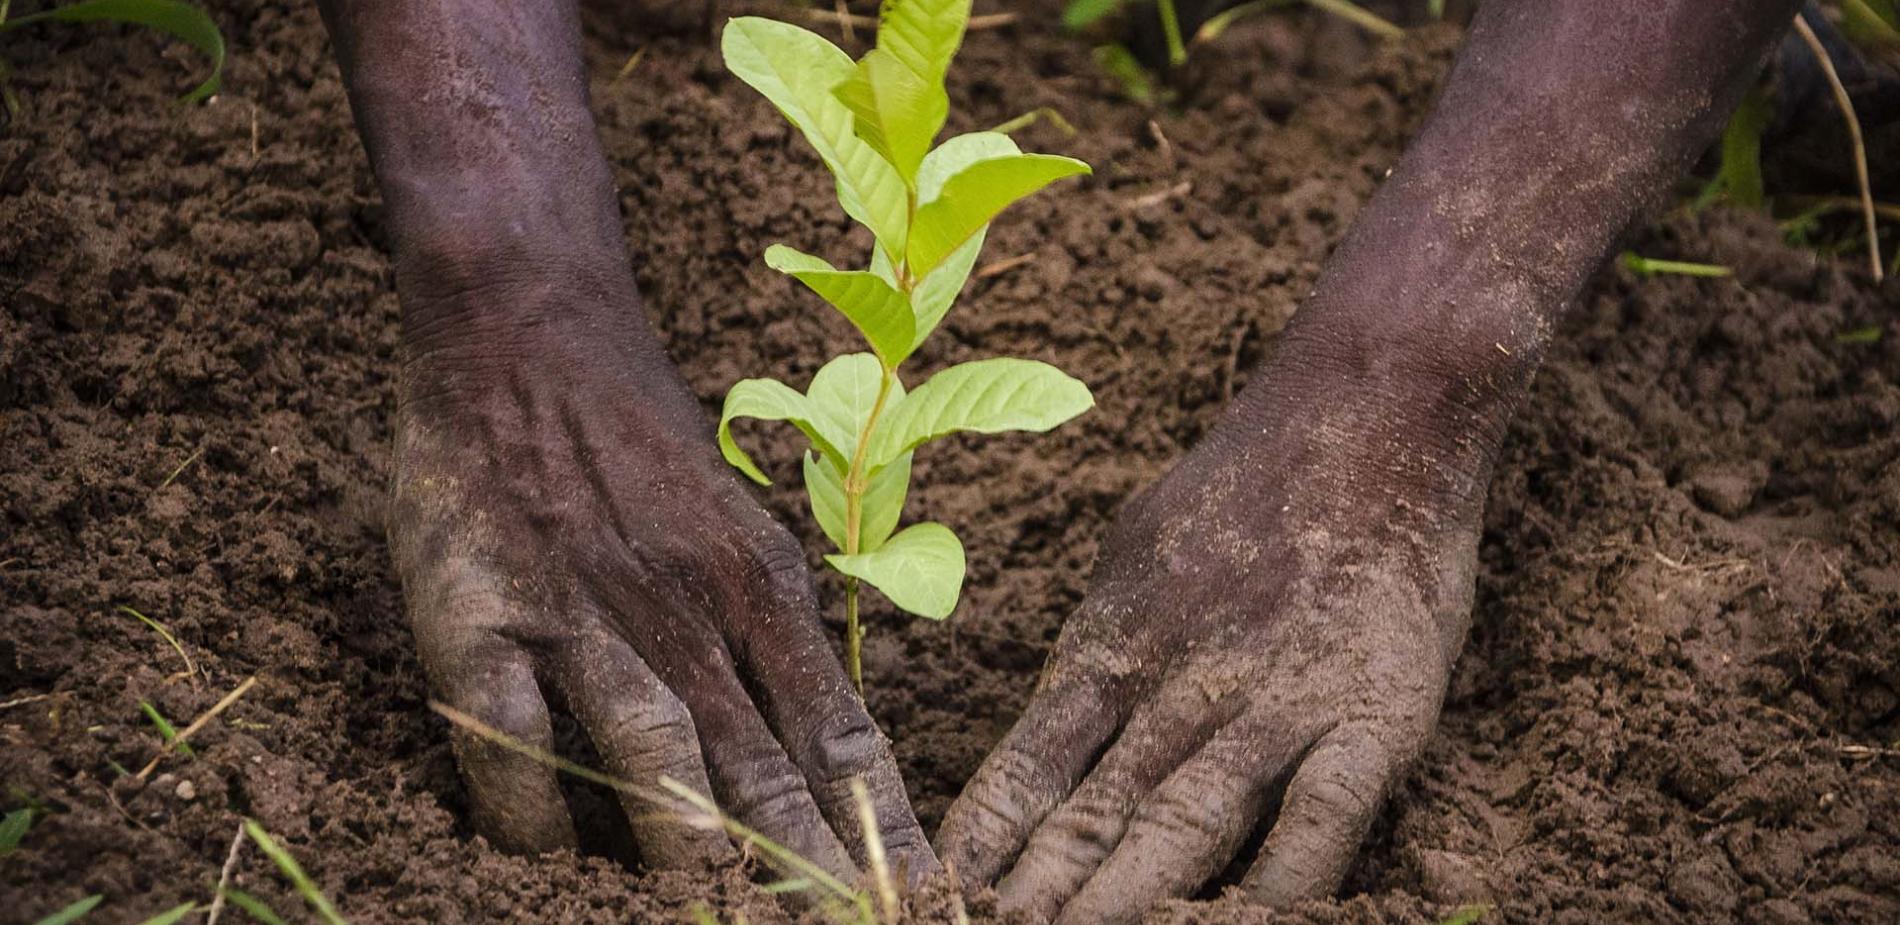 Congo : plus de 1000 espèces d’arbres plantés Patte d’Oie